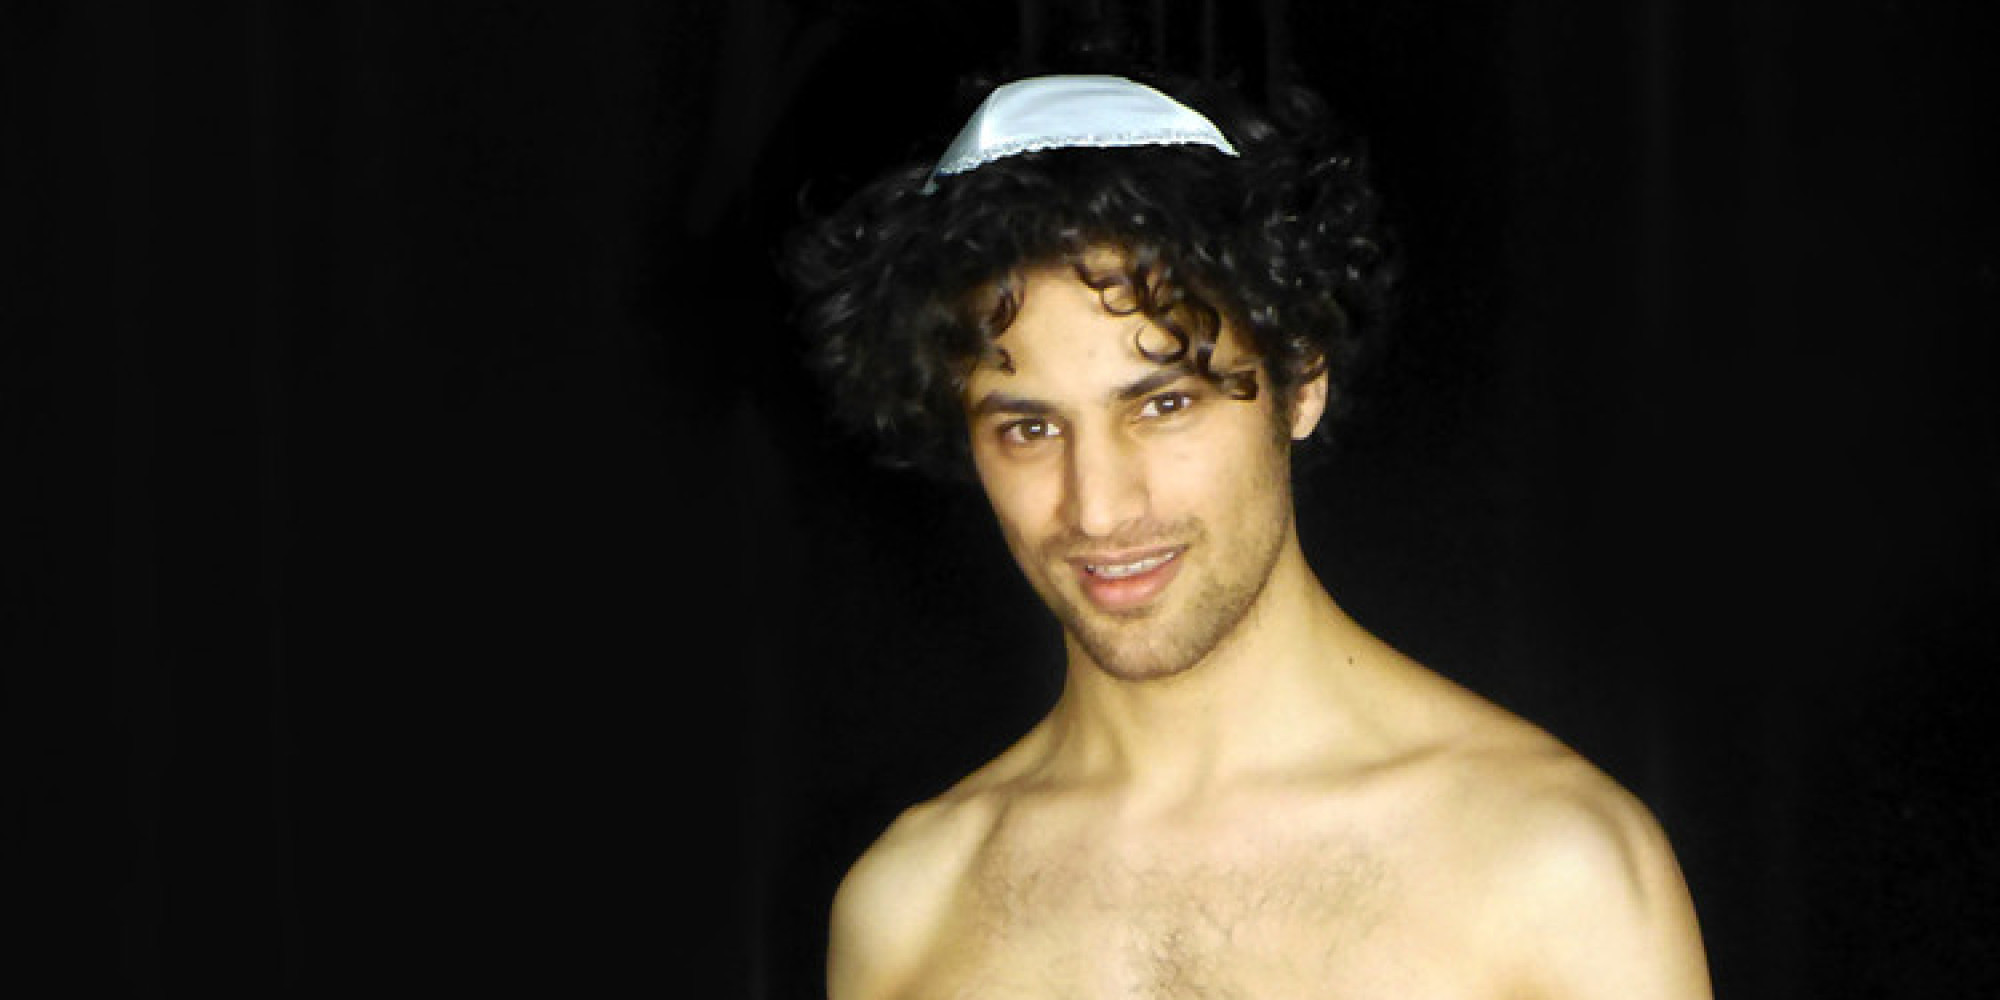 Naughty jewish boy - nude photos